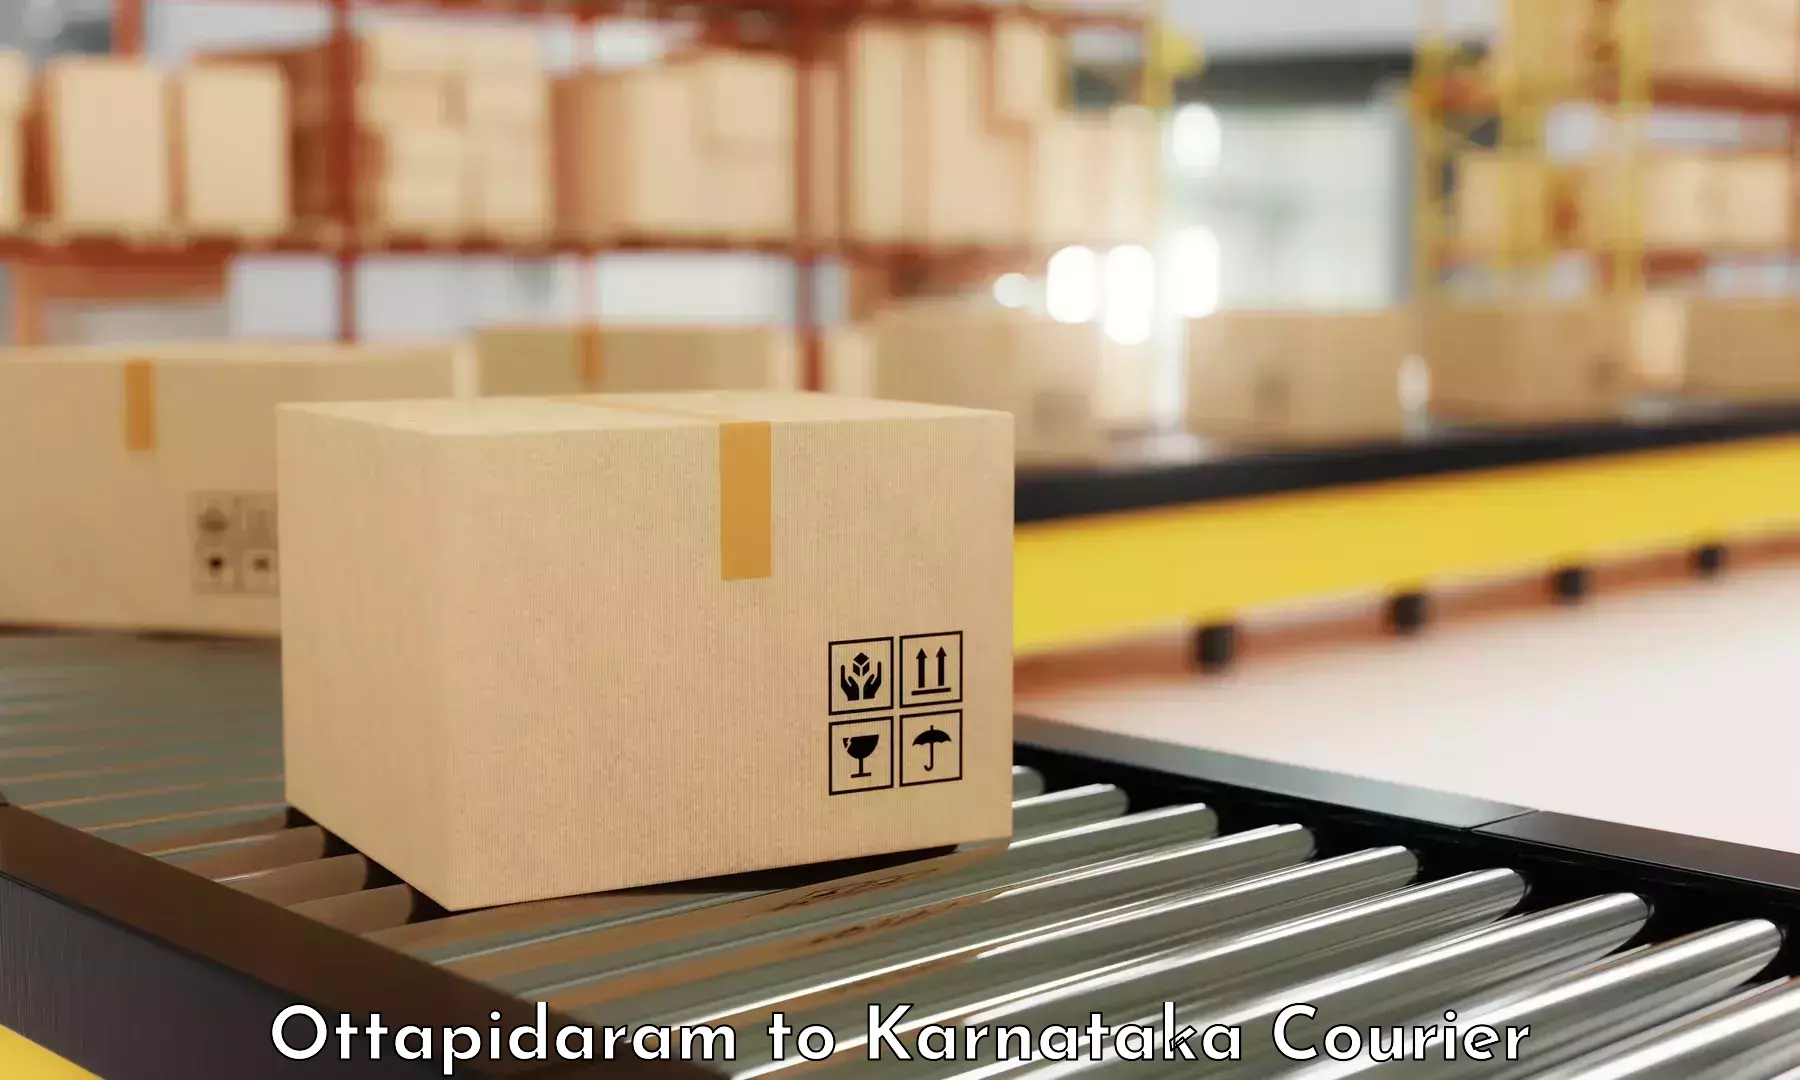 High-capacity parcel service Ottapidaram to Krishnarajanagara